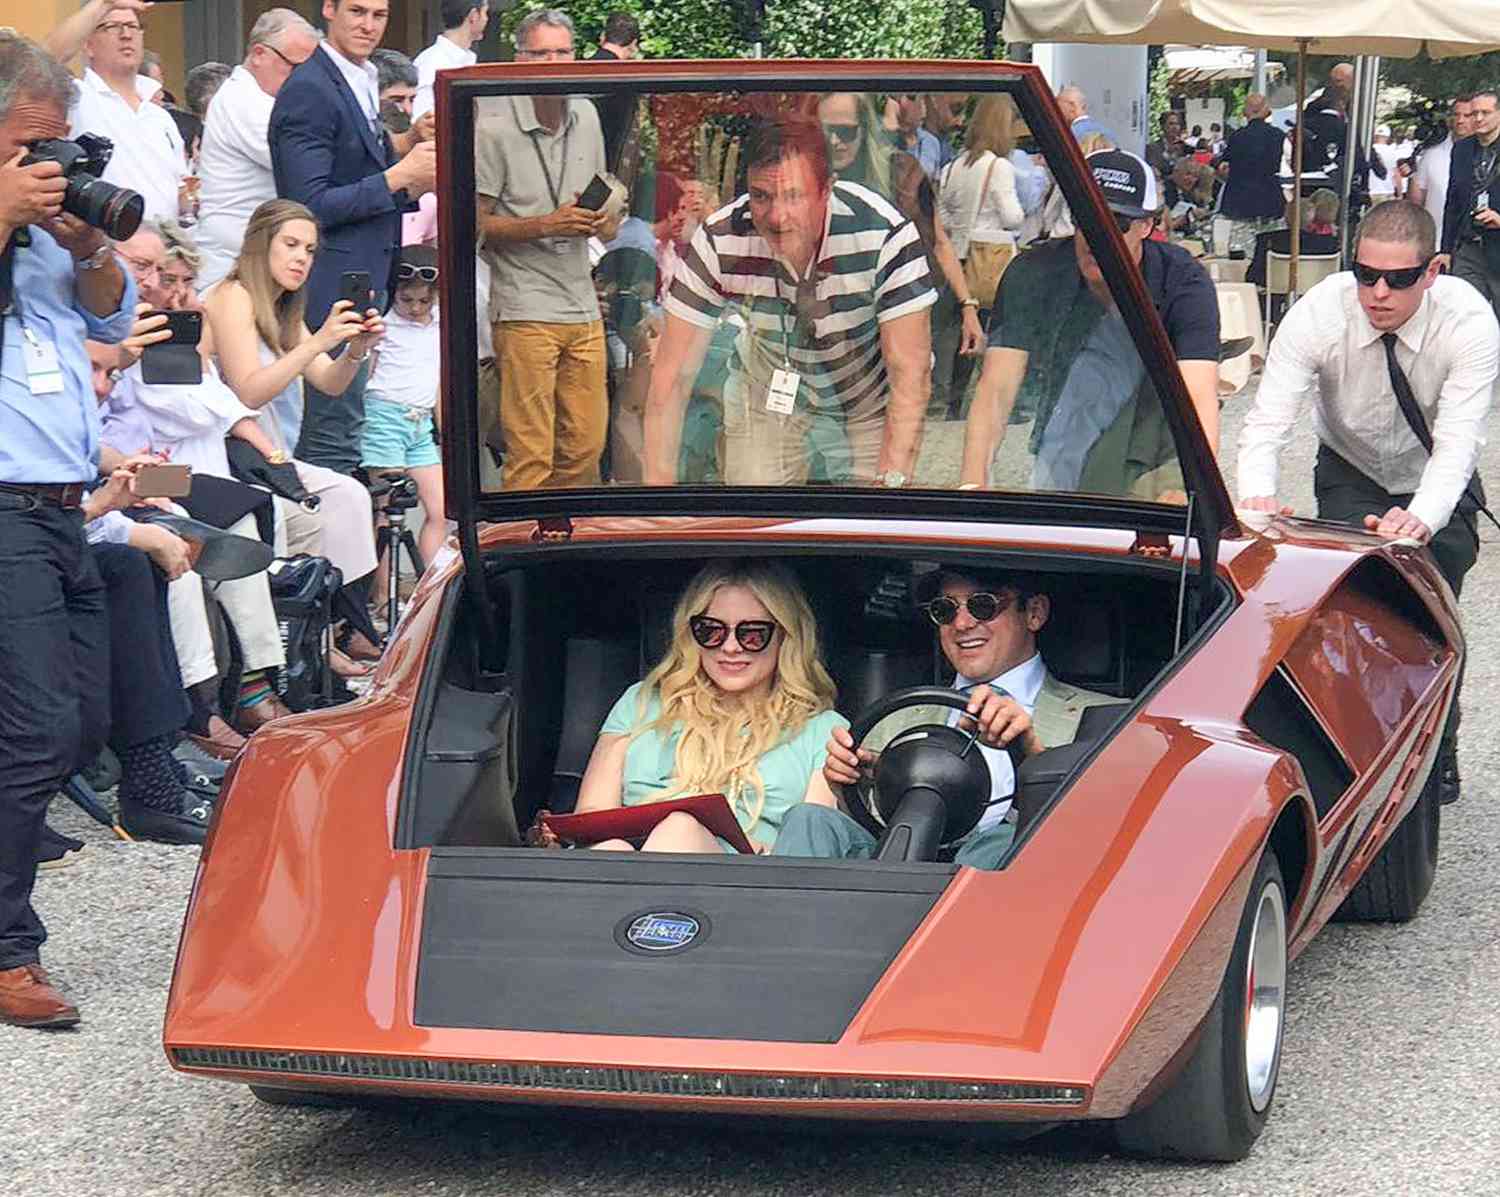 Avril Lavigne and Boyfriend Phillip Sarofim are Spotted at the Concorso dell'eleganza in Lake Como, Italy